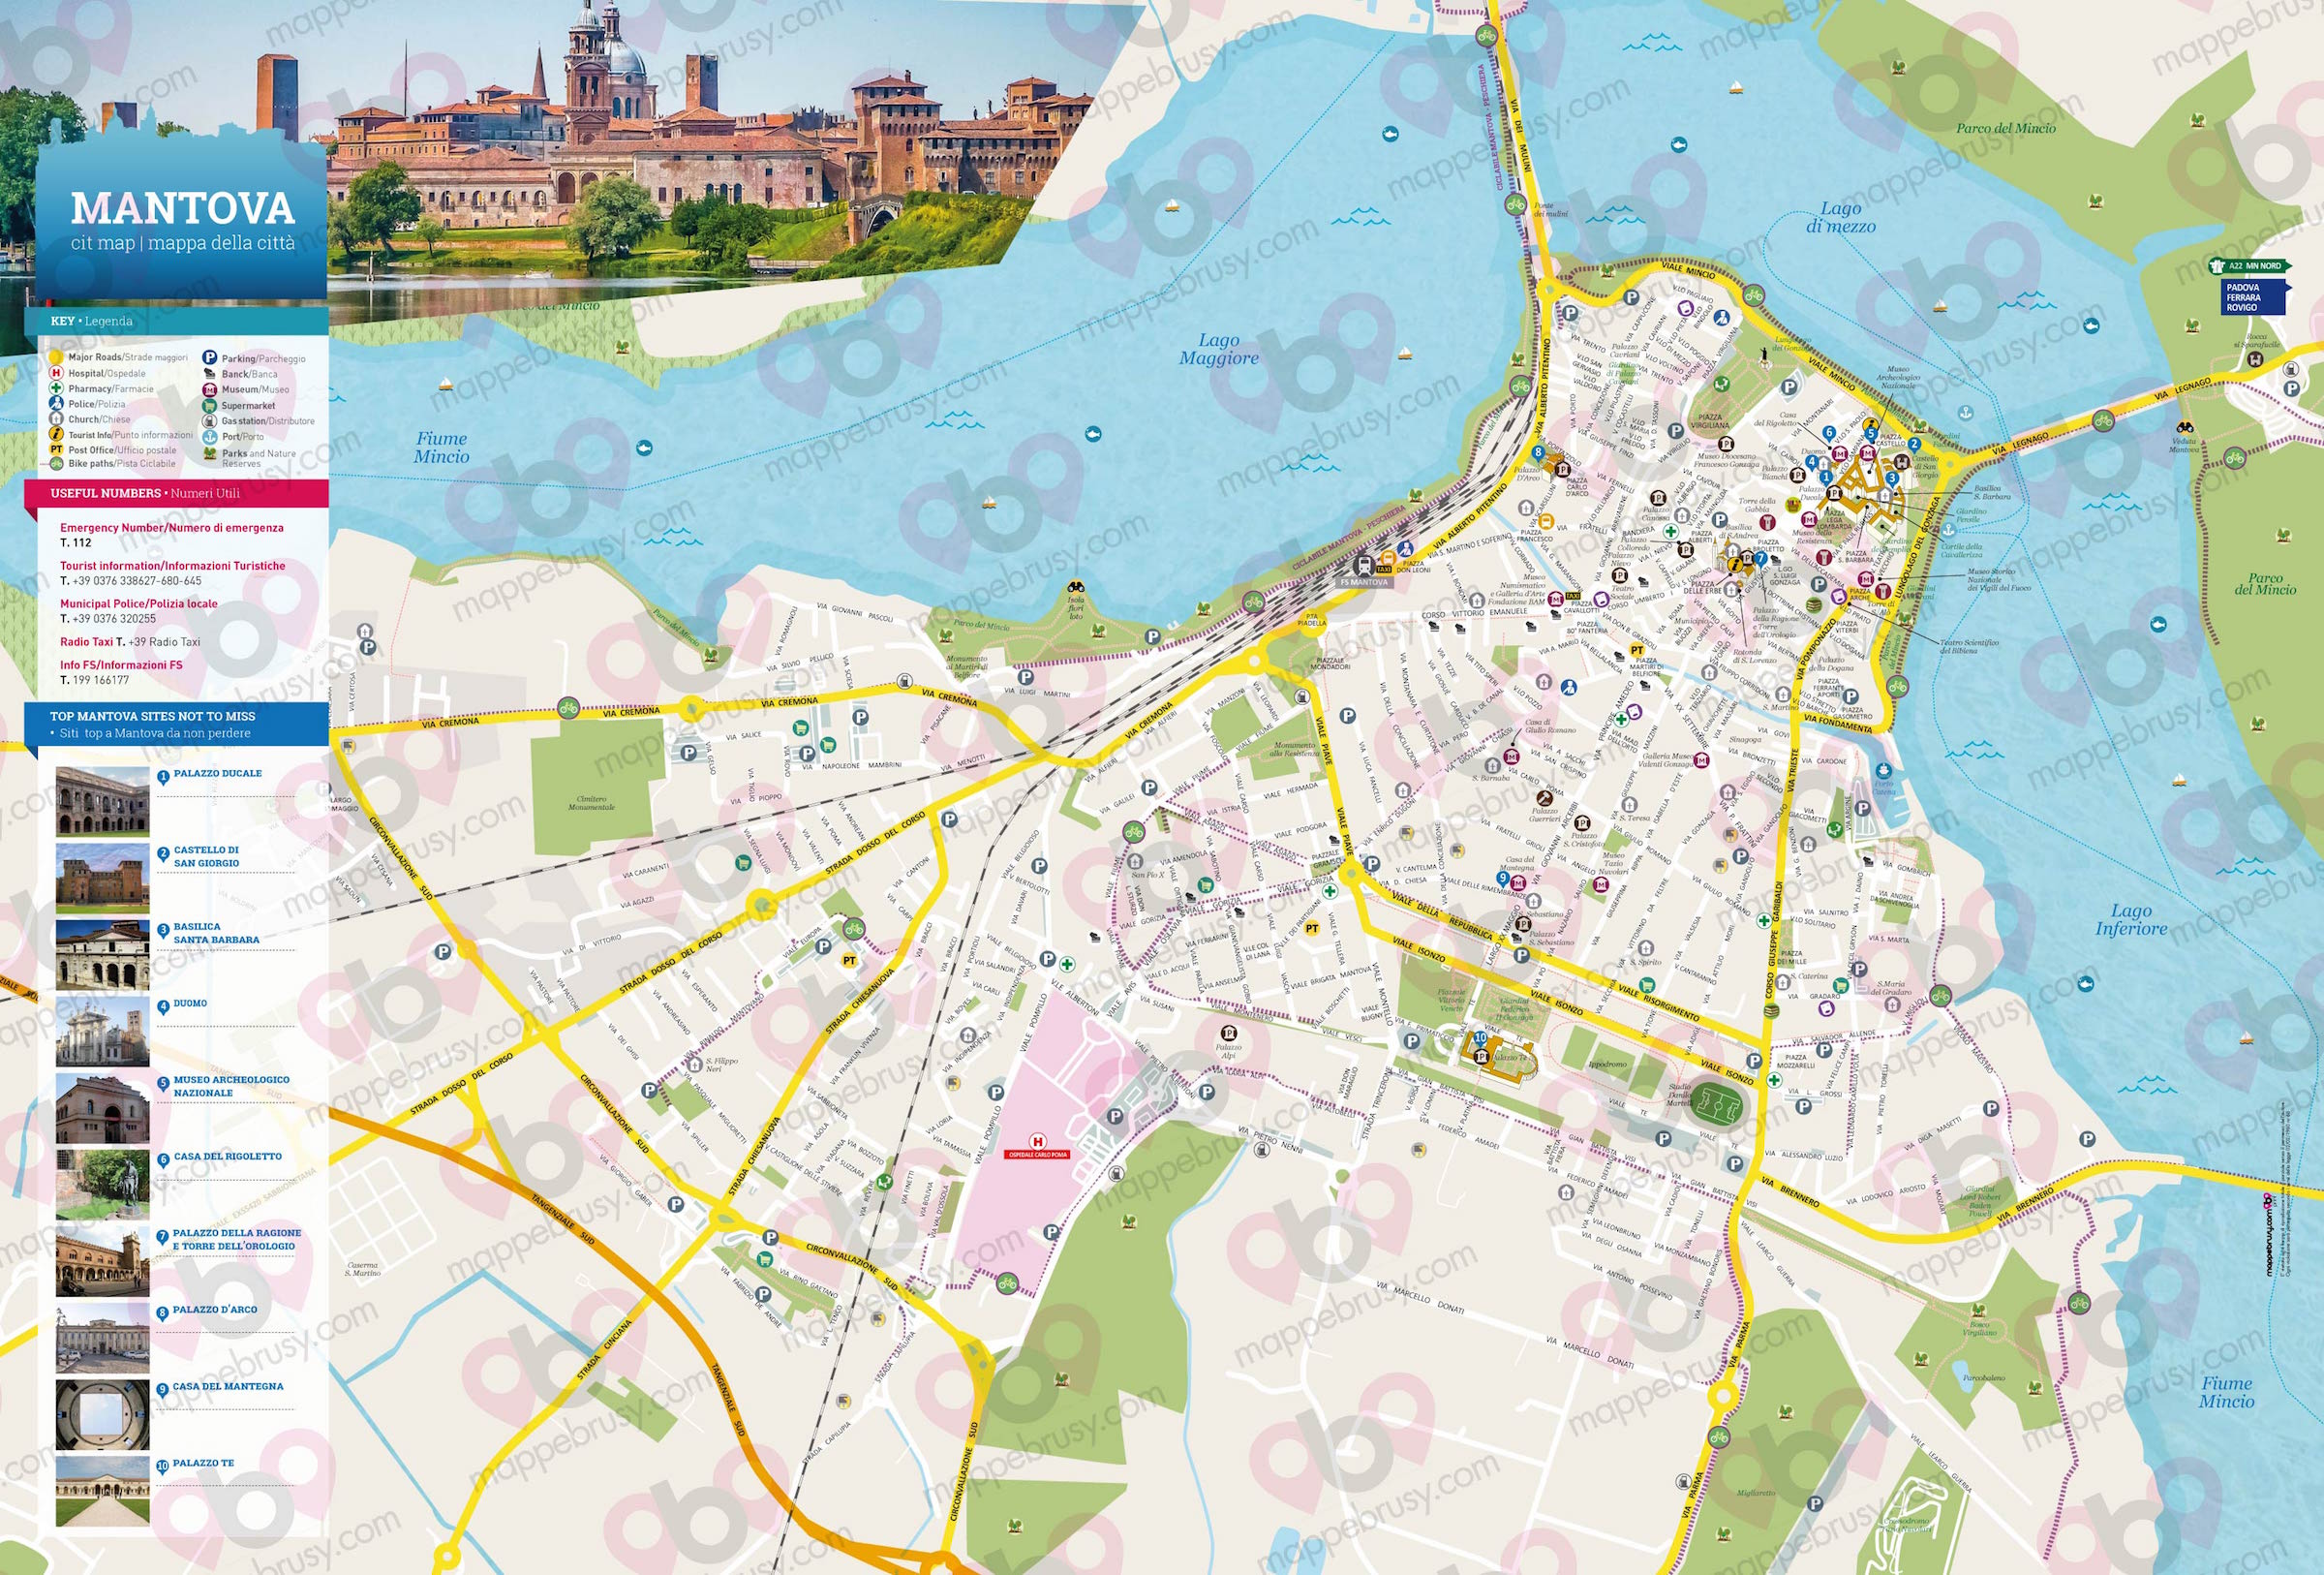 Mappa di Mantova - Mantova city map - mappa Mantova - mappa personalizzata di Mantova